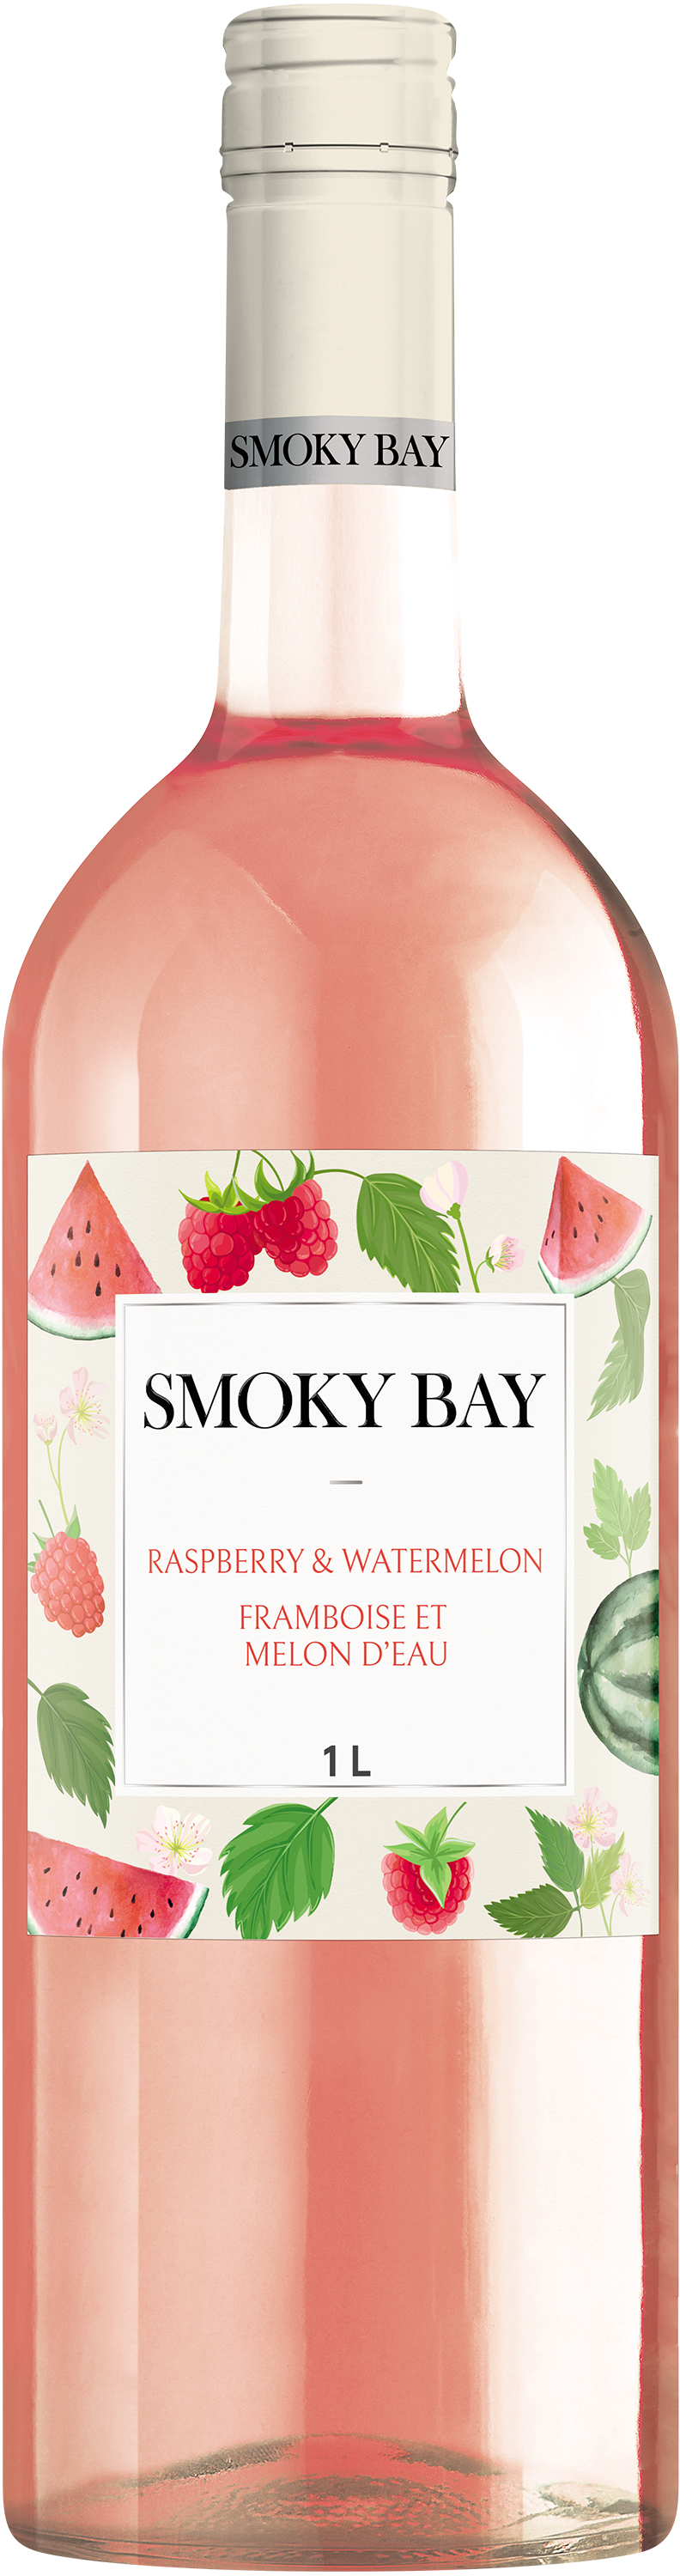 Smoky Bay Raspberry & Watermelon